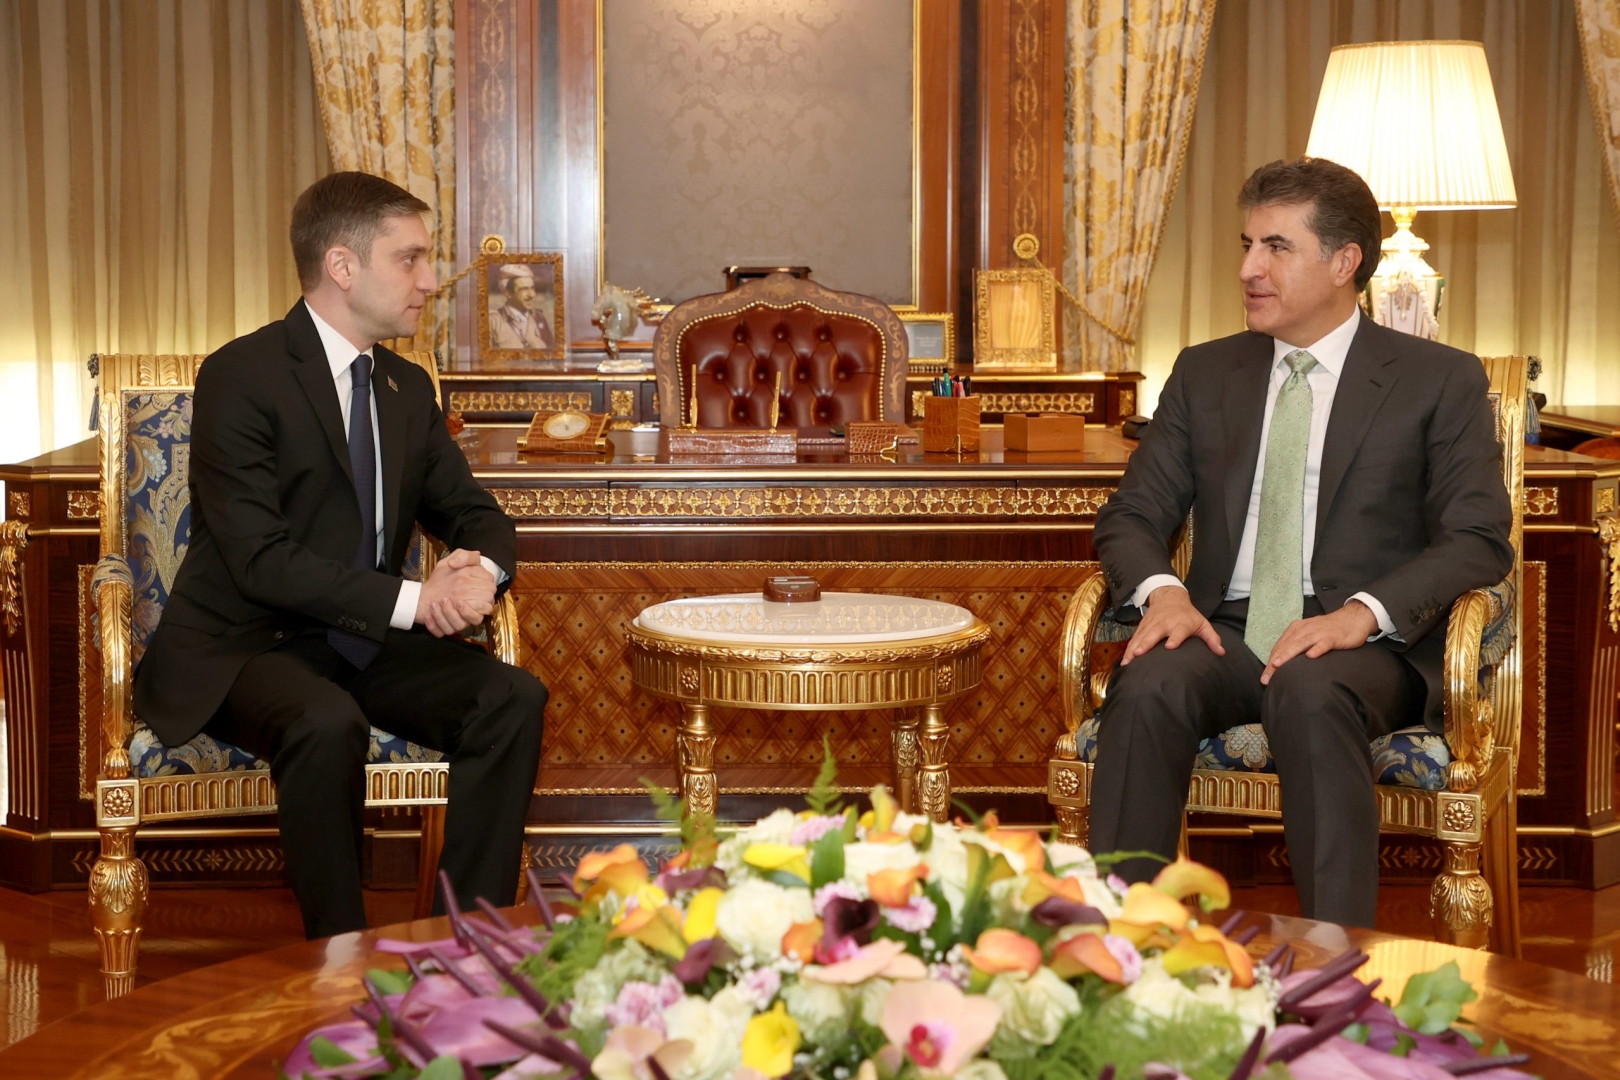 نيجيرفان بارزاني يبحث مع دبلوماسي أذربيجاني فتح قنصلية لبلاده في إقليم كوردستان